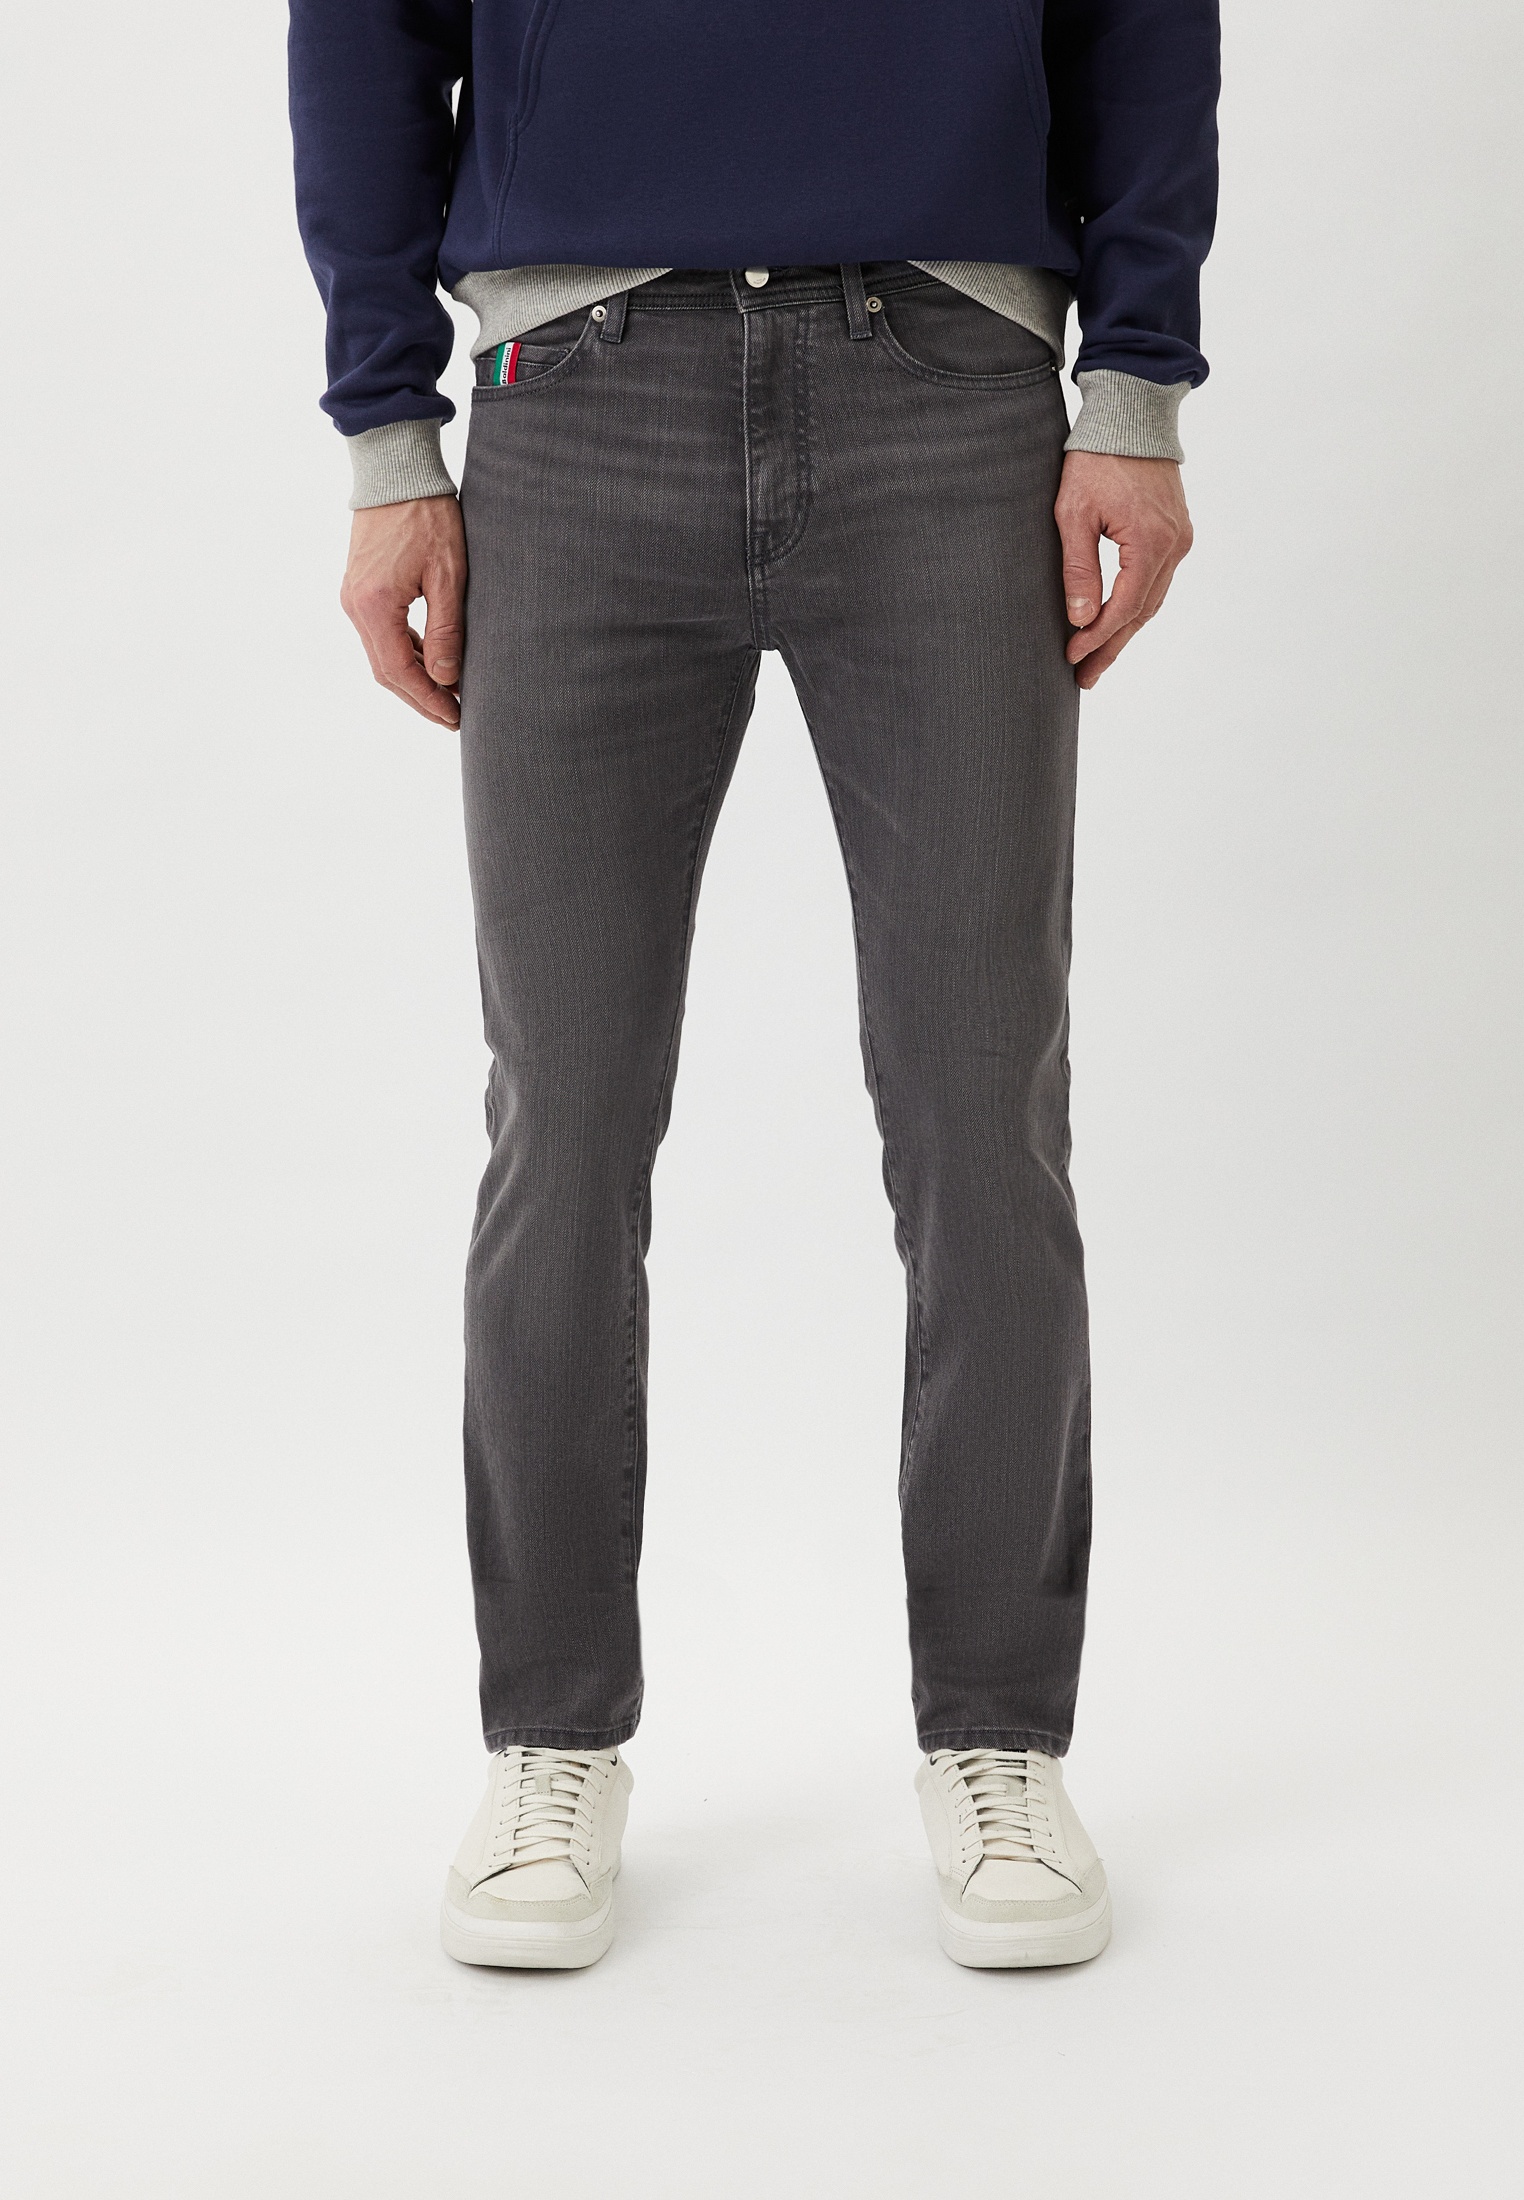 Мужские прямые джинсы Baldinini Trend (Балдинини Тренд) T4255CUNEO